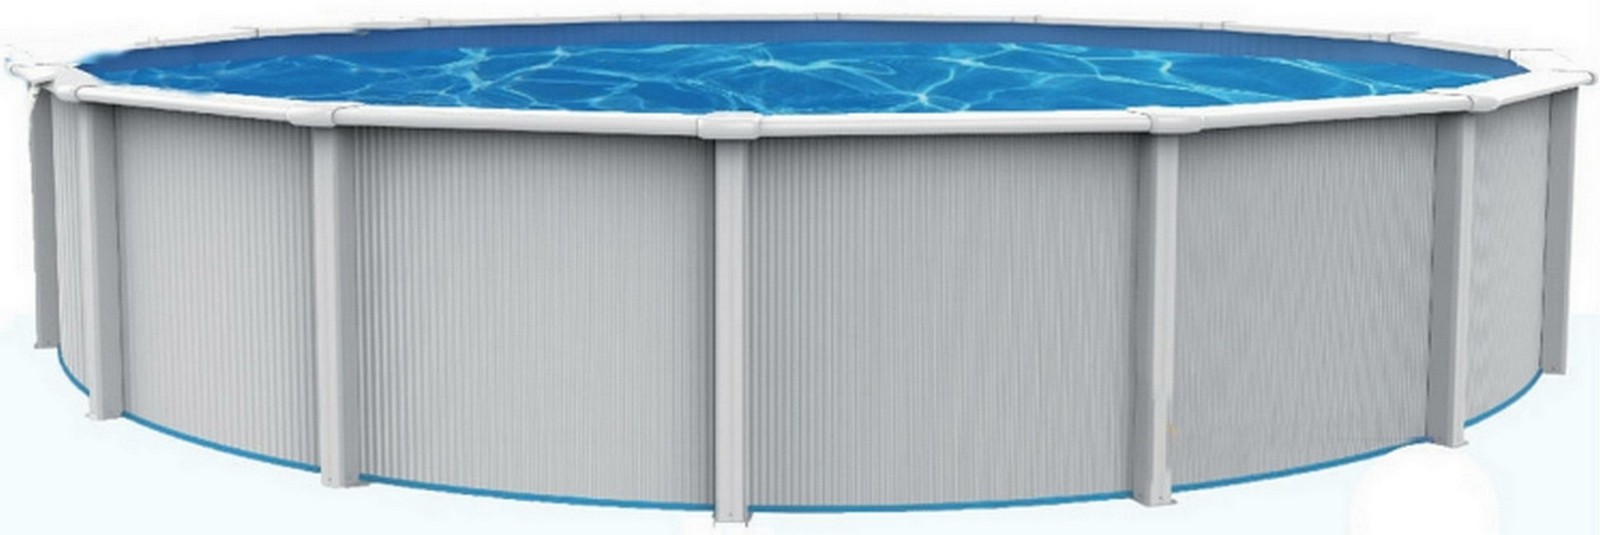 Морозоустойчивый бассейн Poolmagic Sky круглый 550x130 см, комплект Standart (фильтр Intex\Bestway) 1600_535